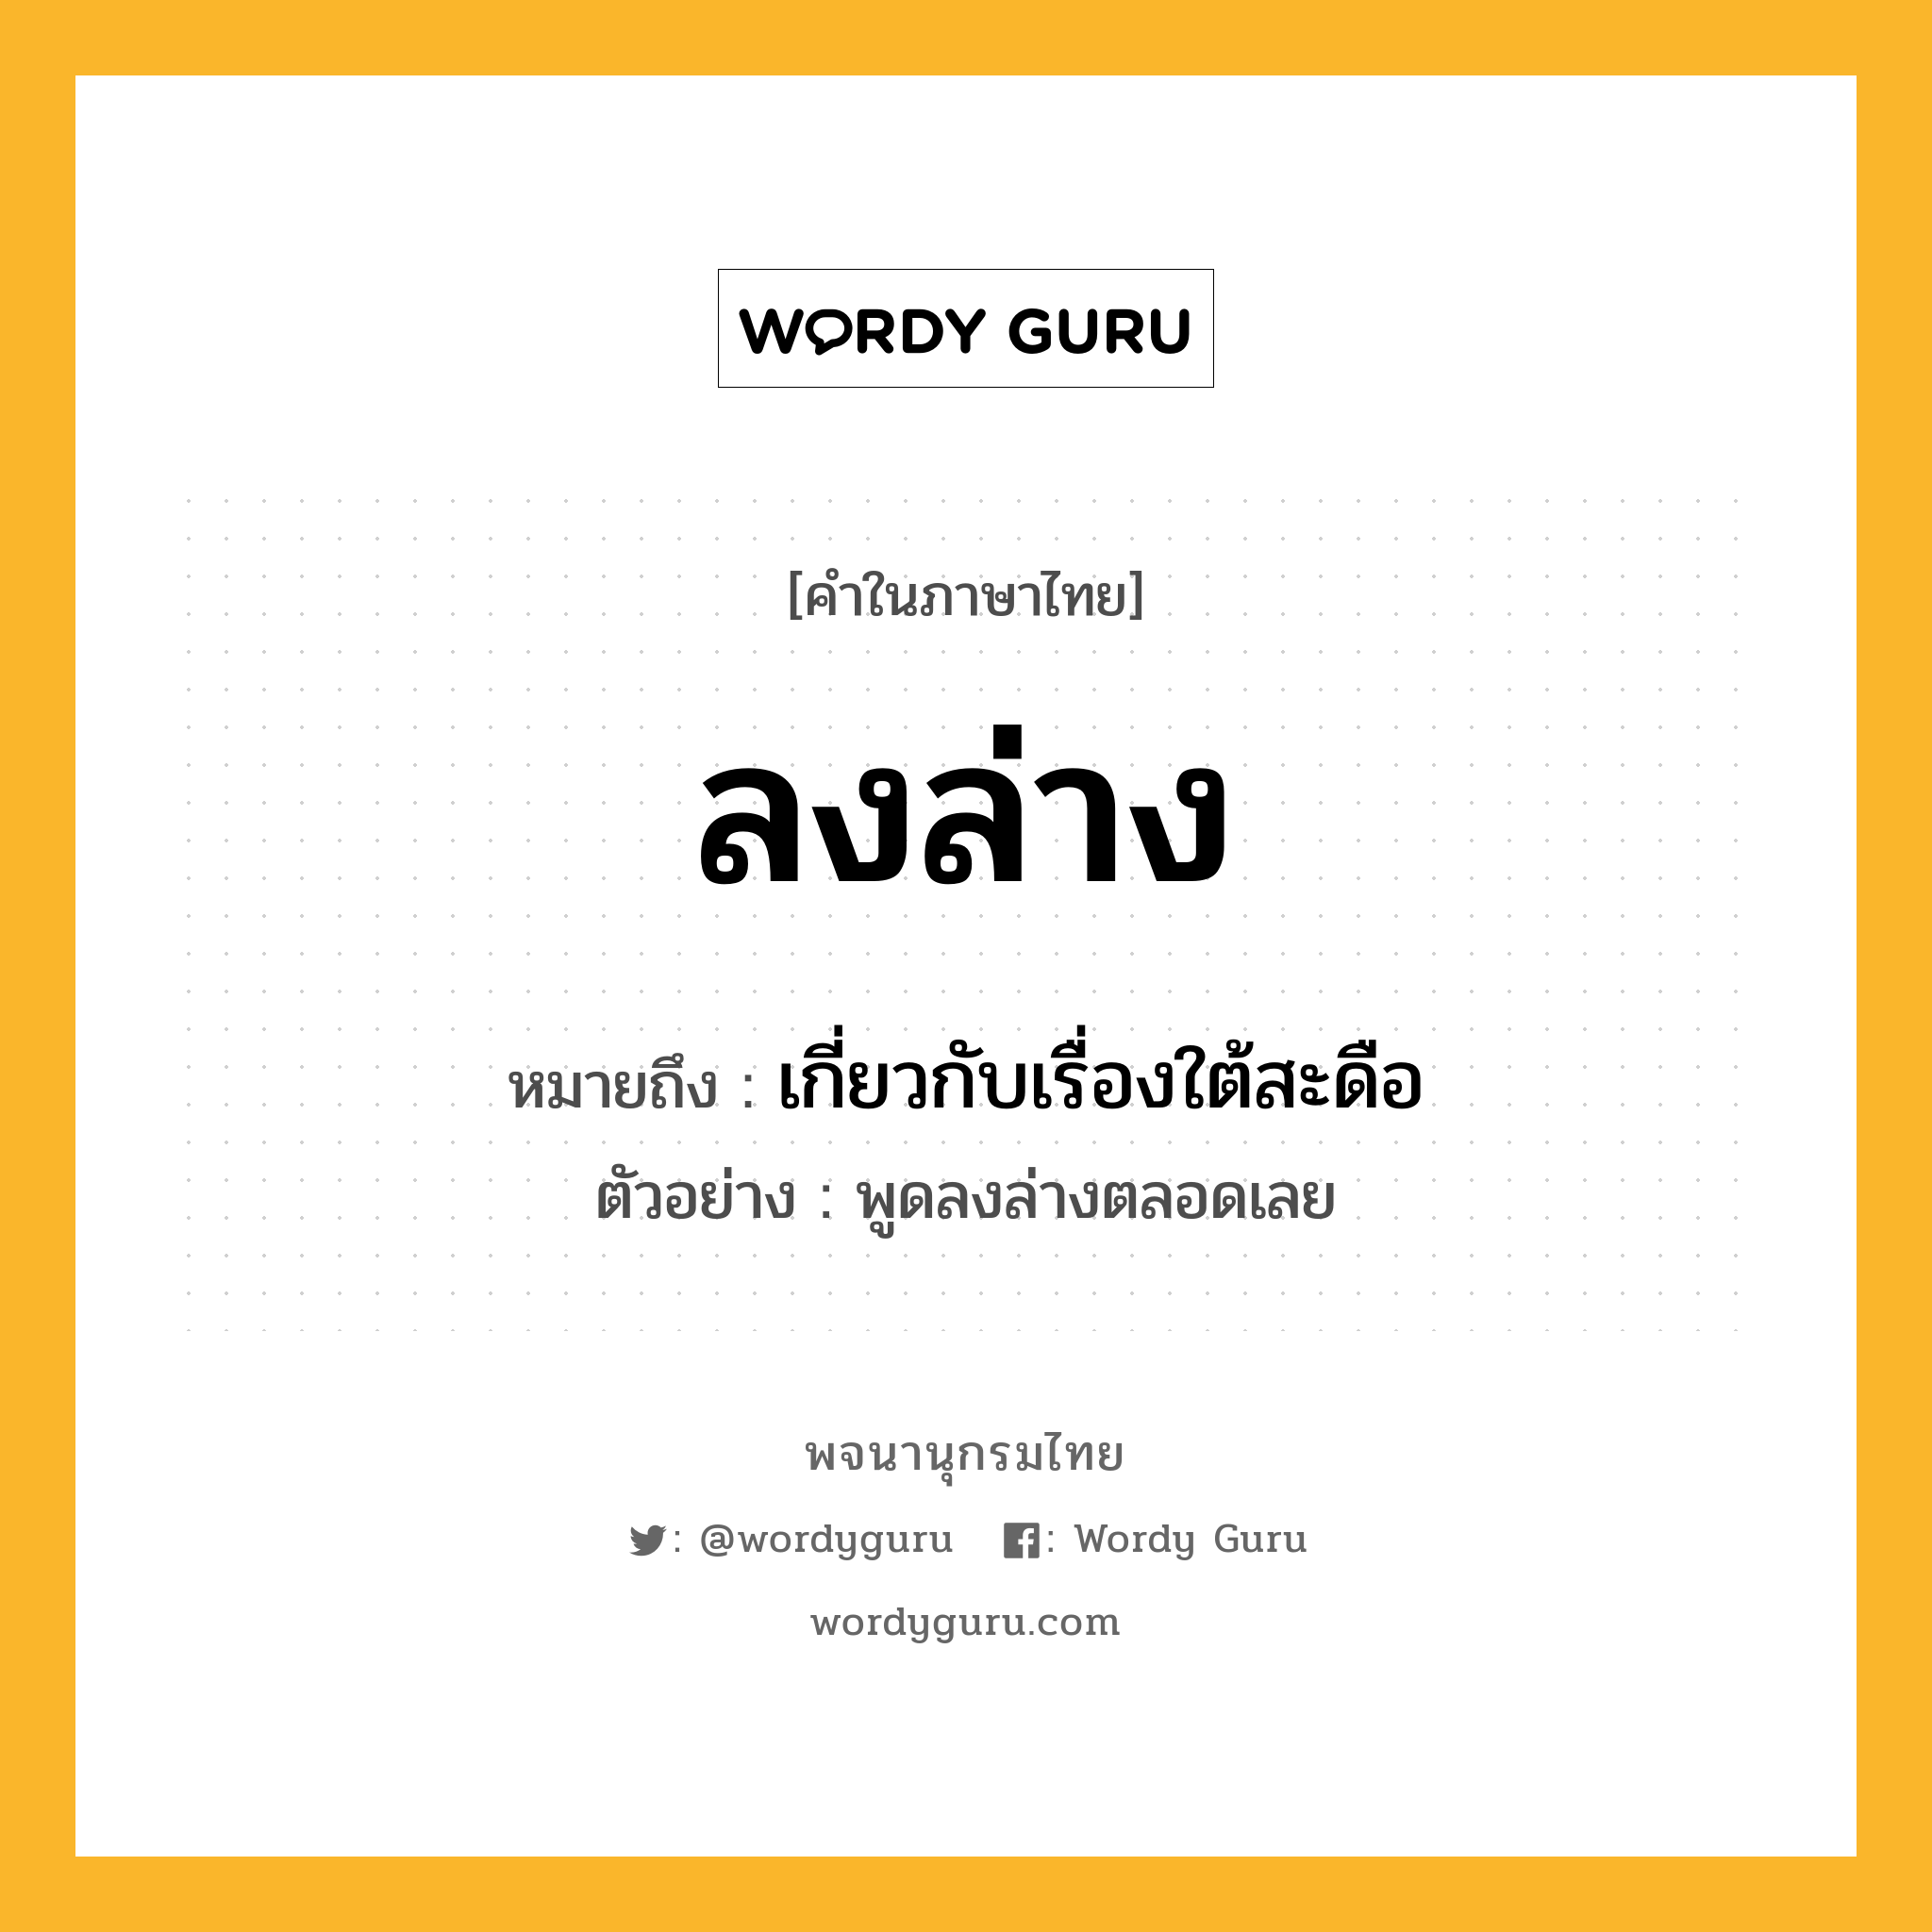 ลงล่าง หมายถึงอะไร?, คำในภาษาไทย ลงล่าง หมายถึง เกี่ยวกับเรื่องใต้สะดือ ประเภท สล ตัวอย่าง พูดลงล่างตลอดเลย หมวด สล